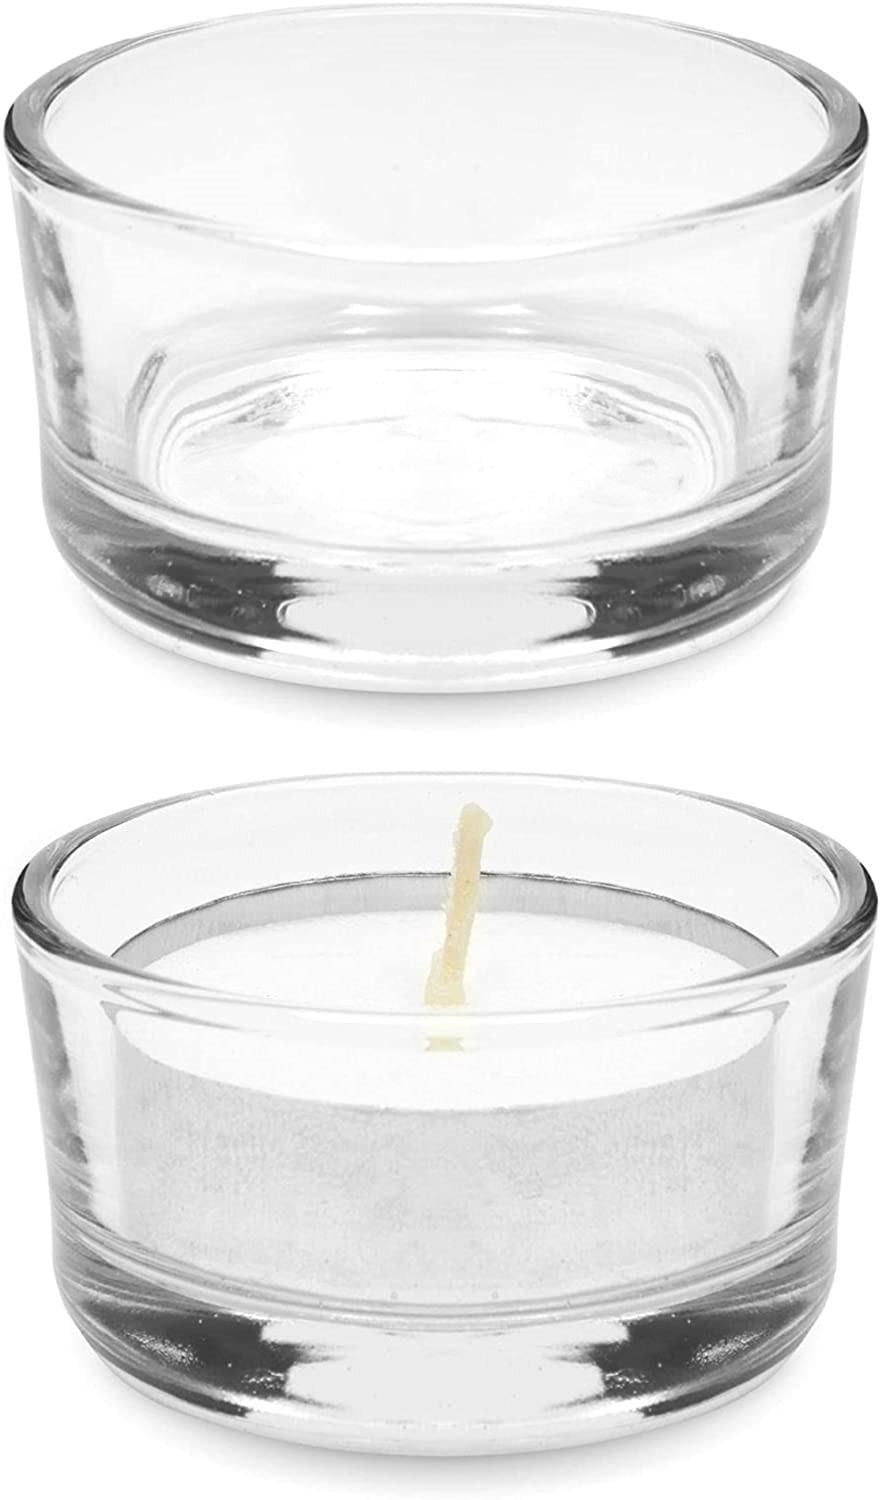 Wholesale 36ml 1 Oz Transparent Glass Tea Candlestick Suitable for Wedding Tea Lamp Central Decoration Home Decoration D5.2*H3.2cm